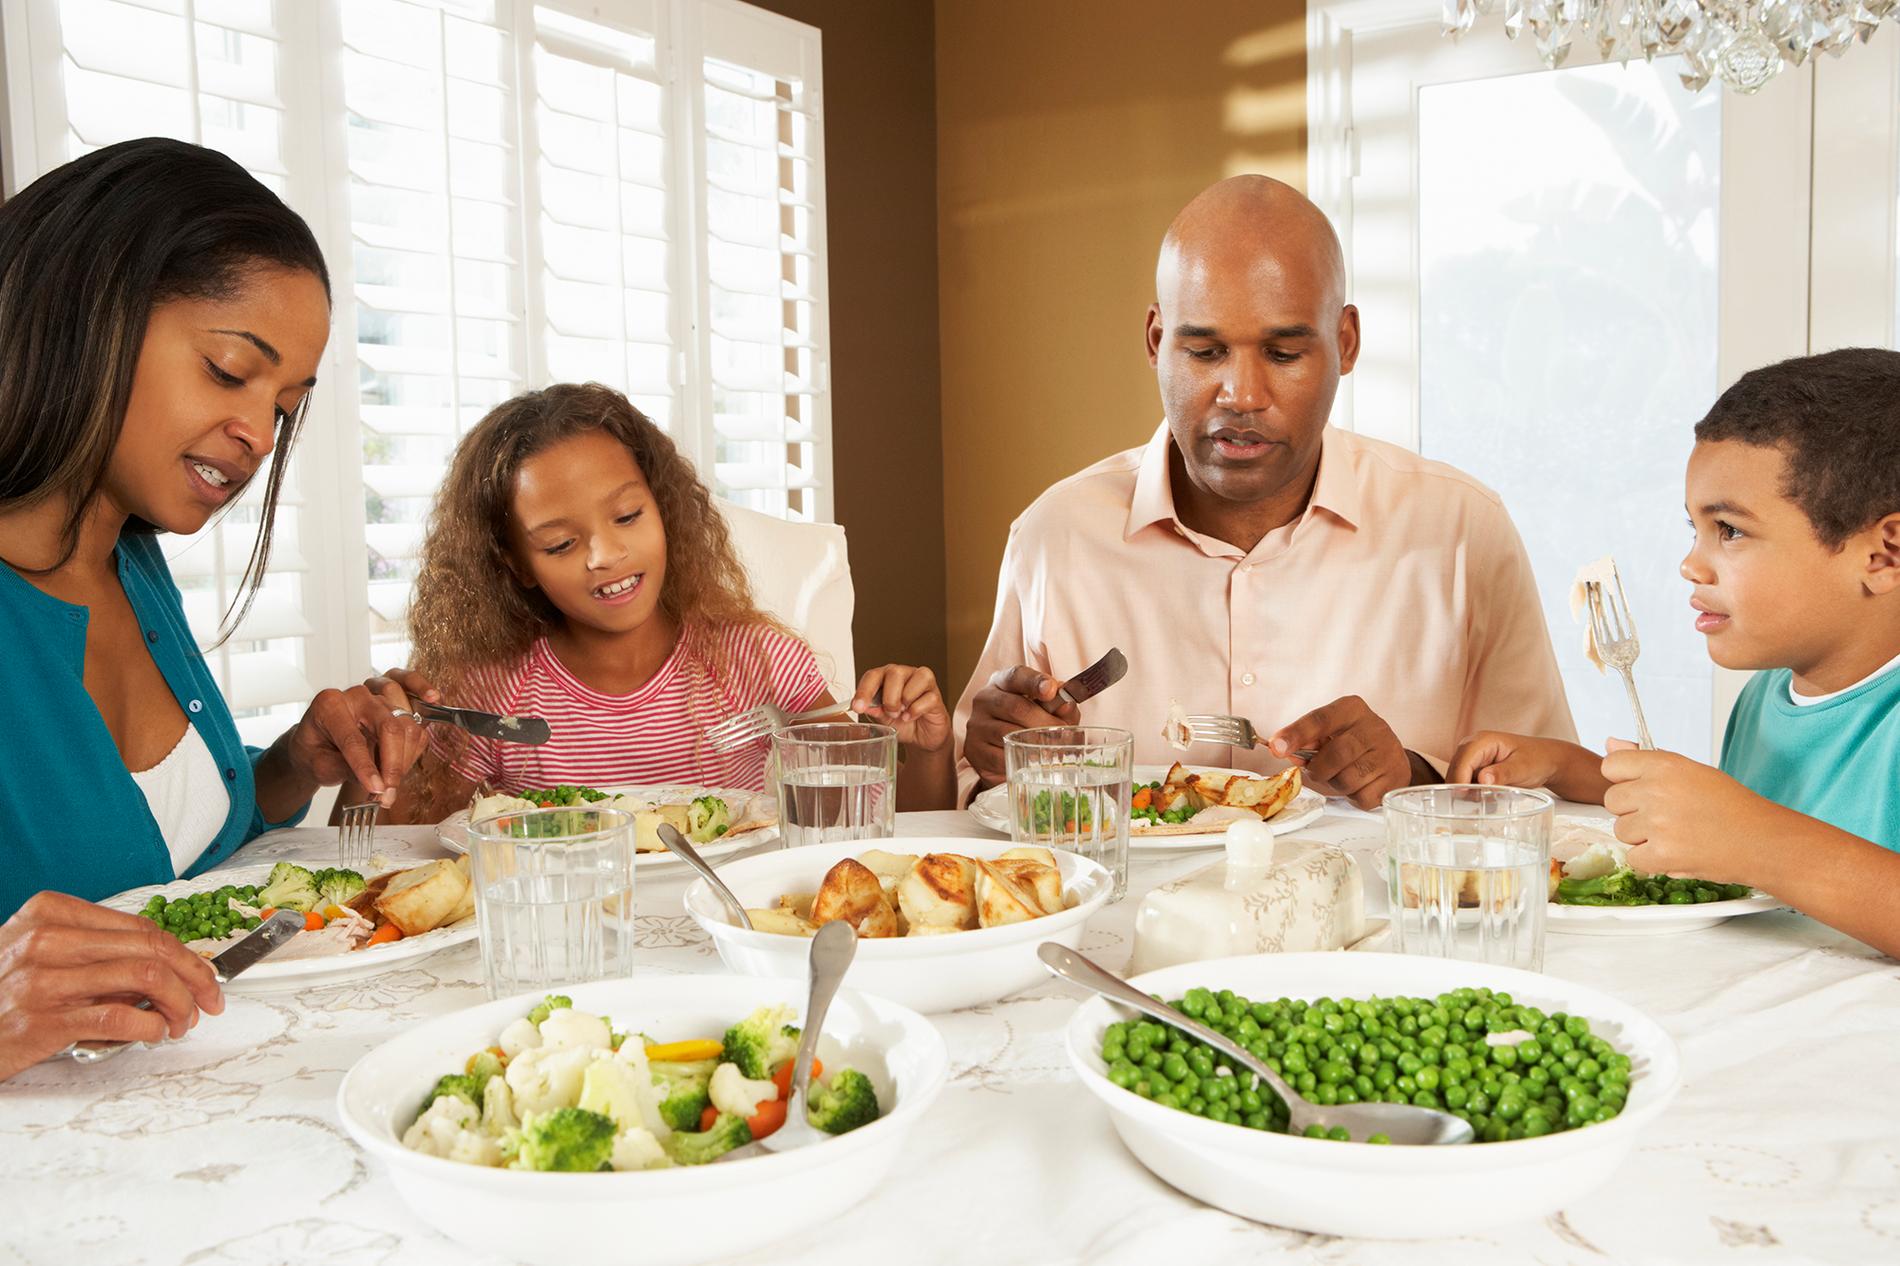 Föräldrar som åt tillsammans med sina barn runt ett matbord vägde betydligt mindre än dem som åt i soffan, visar en ny studie.